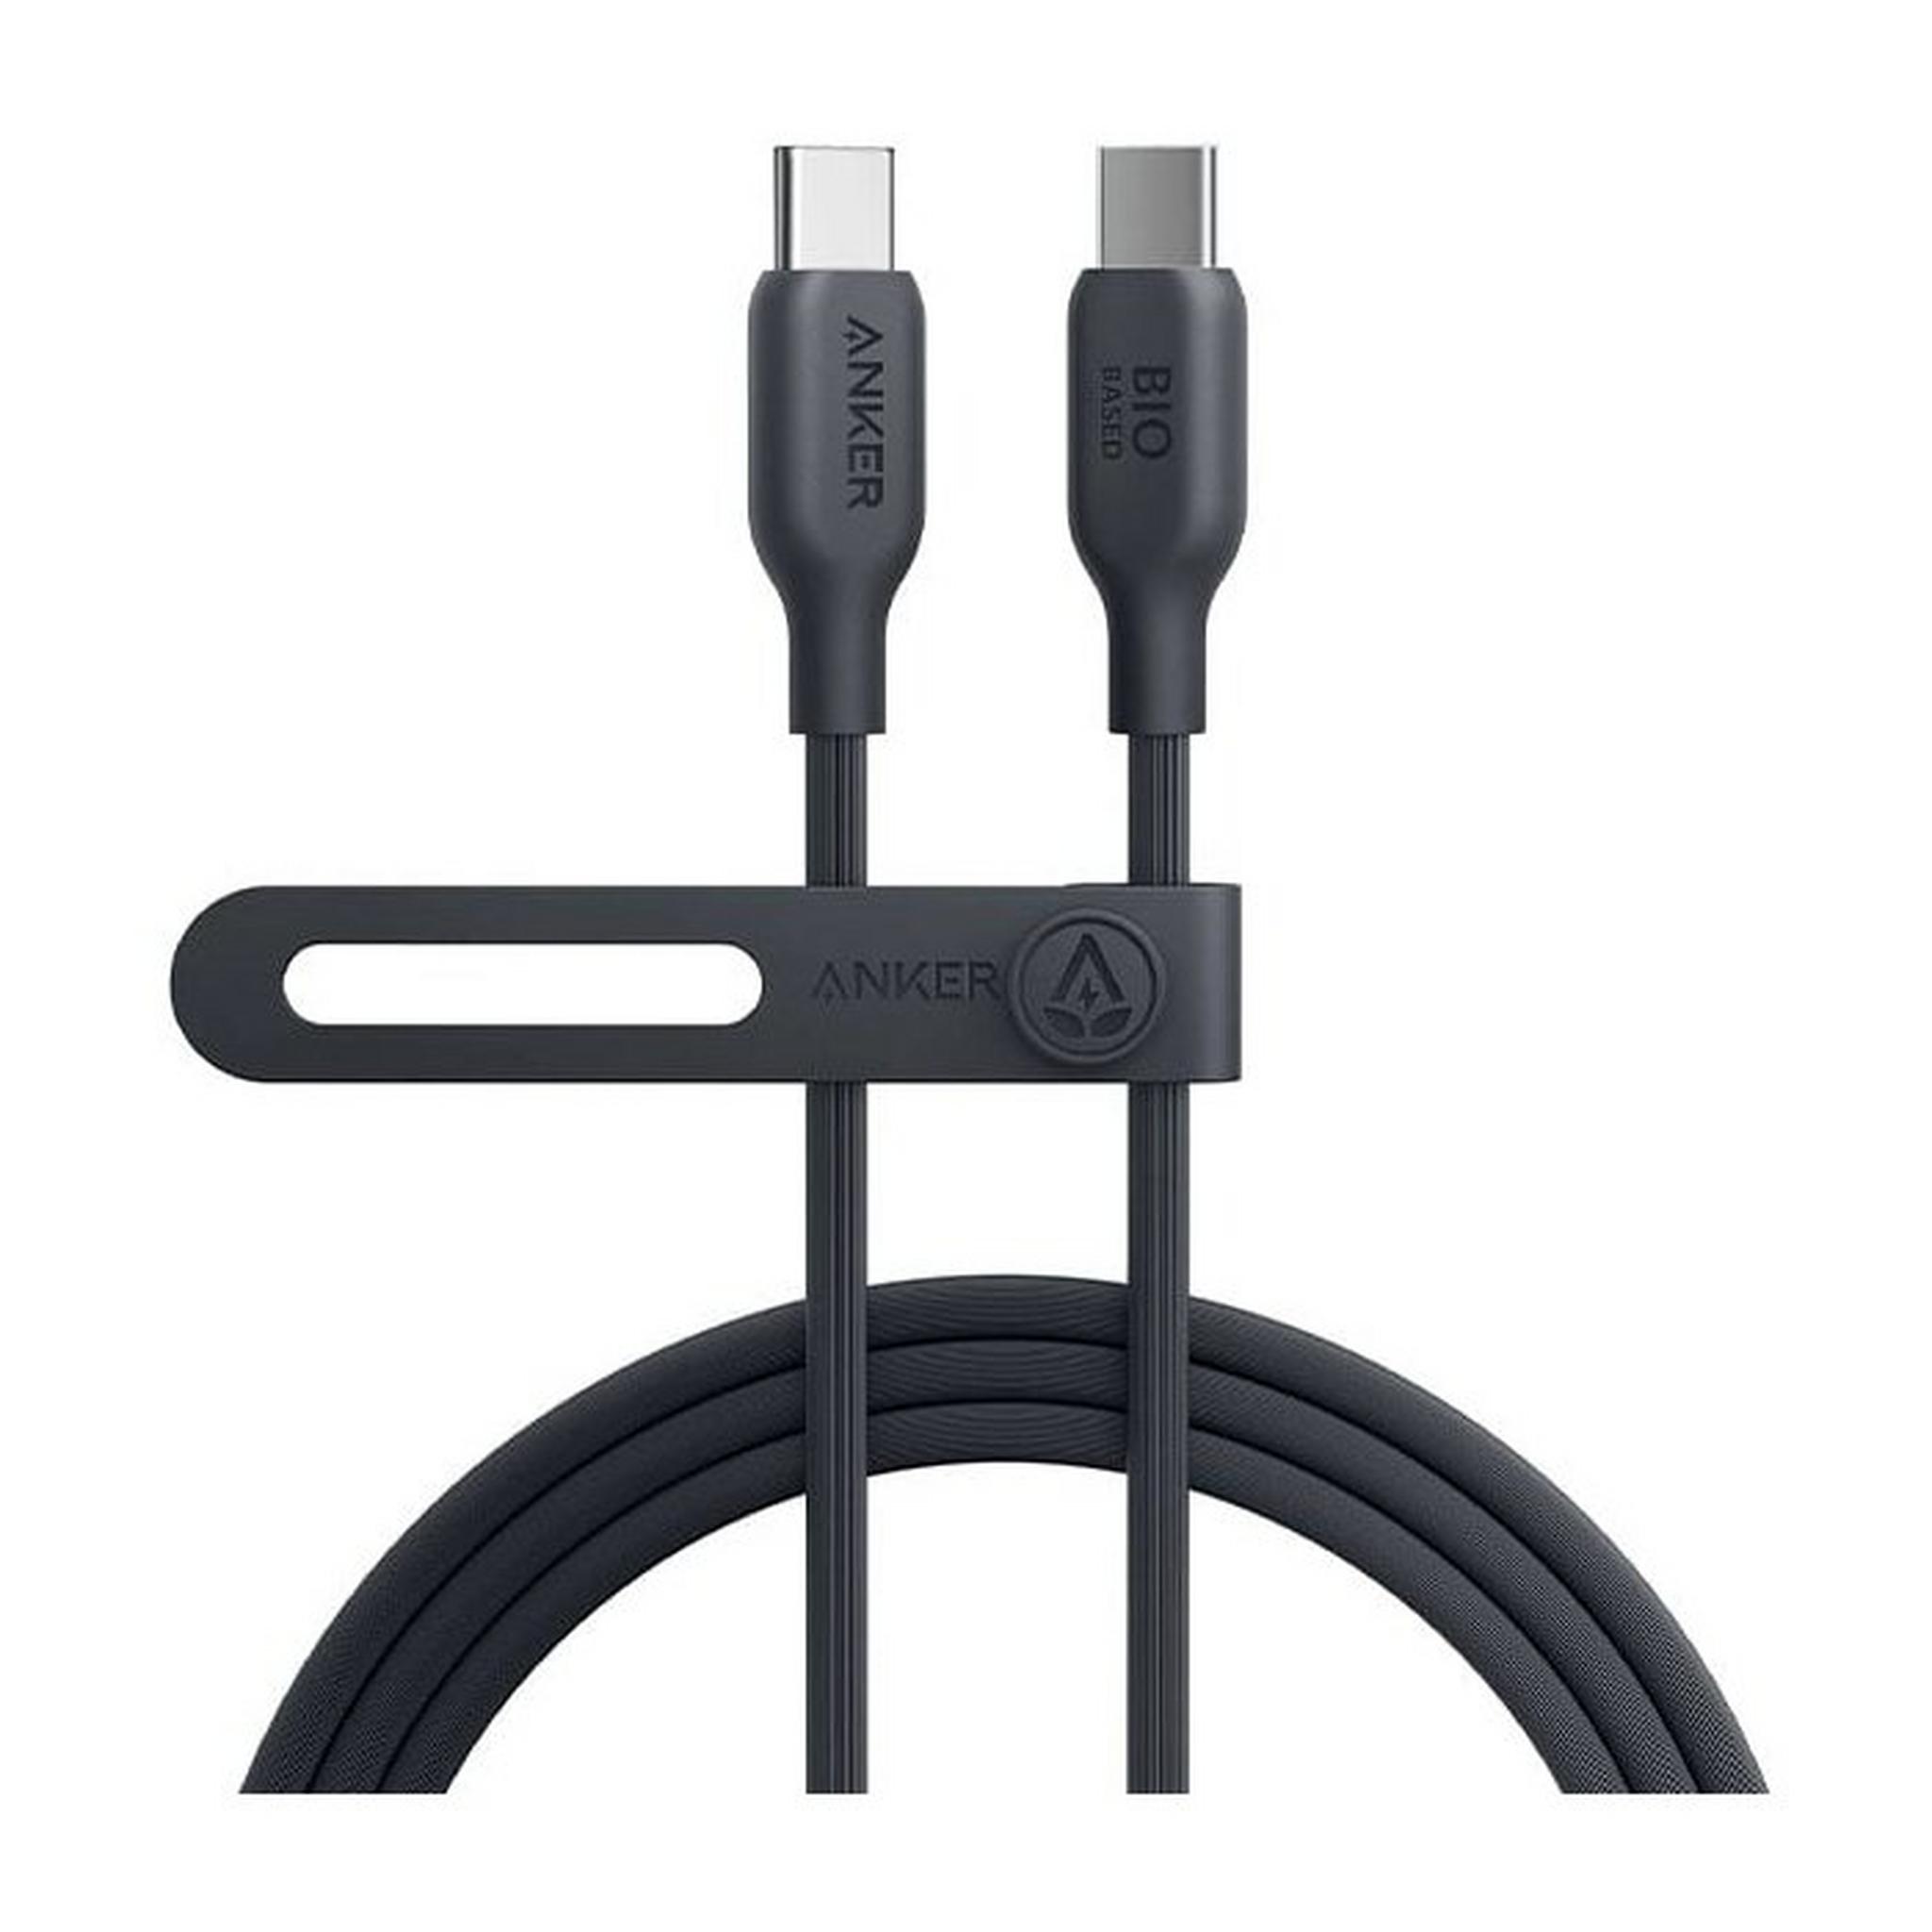 Anker 544 USB-C to USB-C Cable Bio-Based, 140W, 1.8m/6ft, A80F2H11 -Black